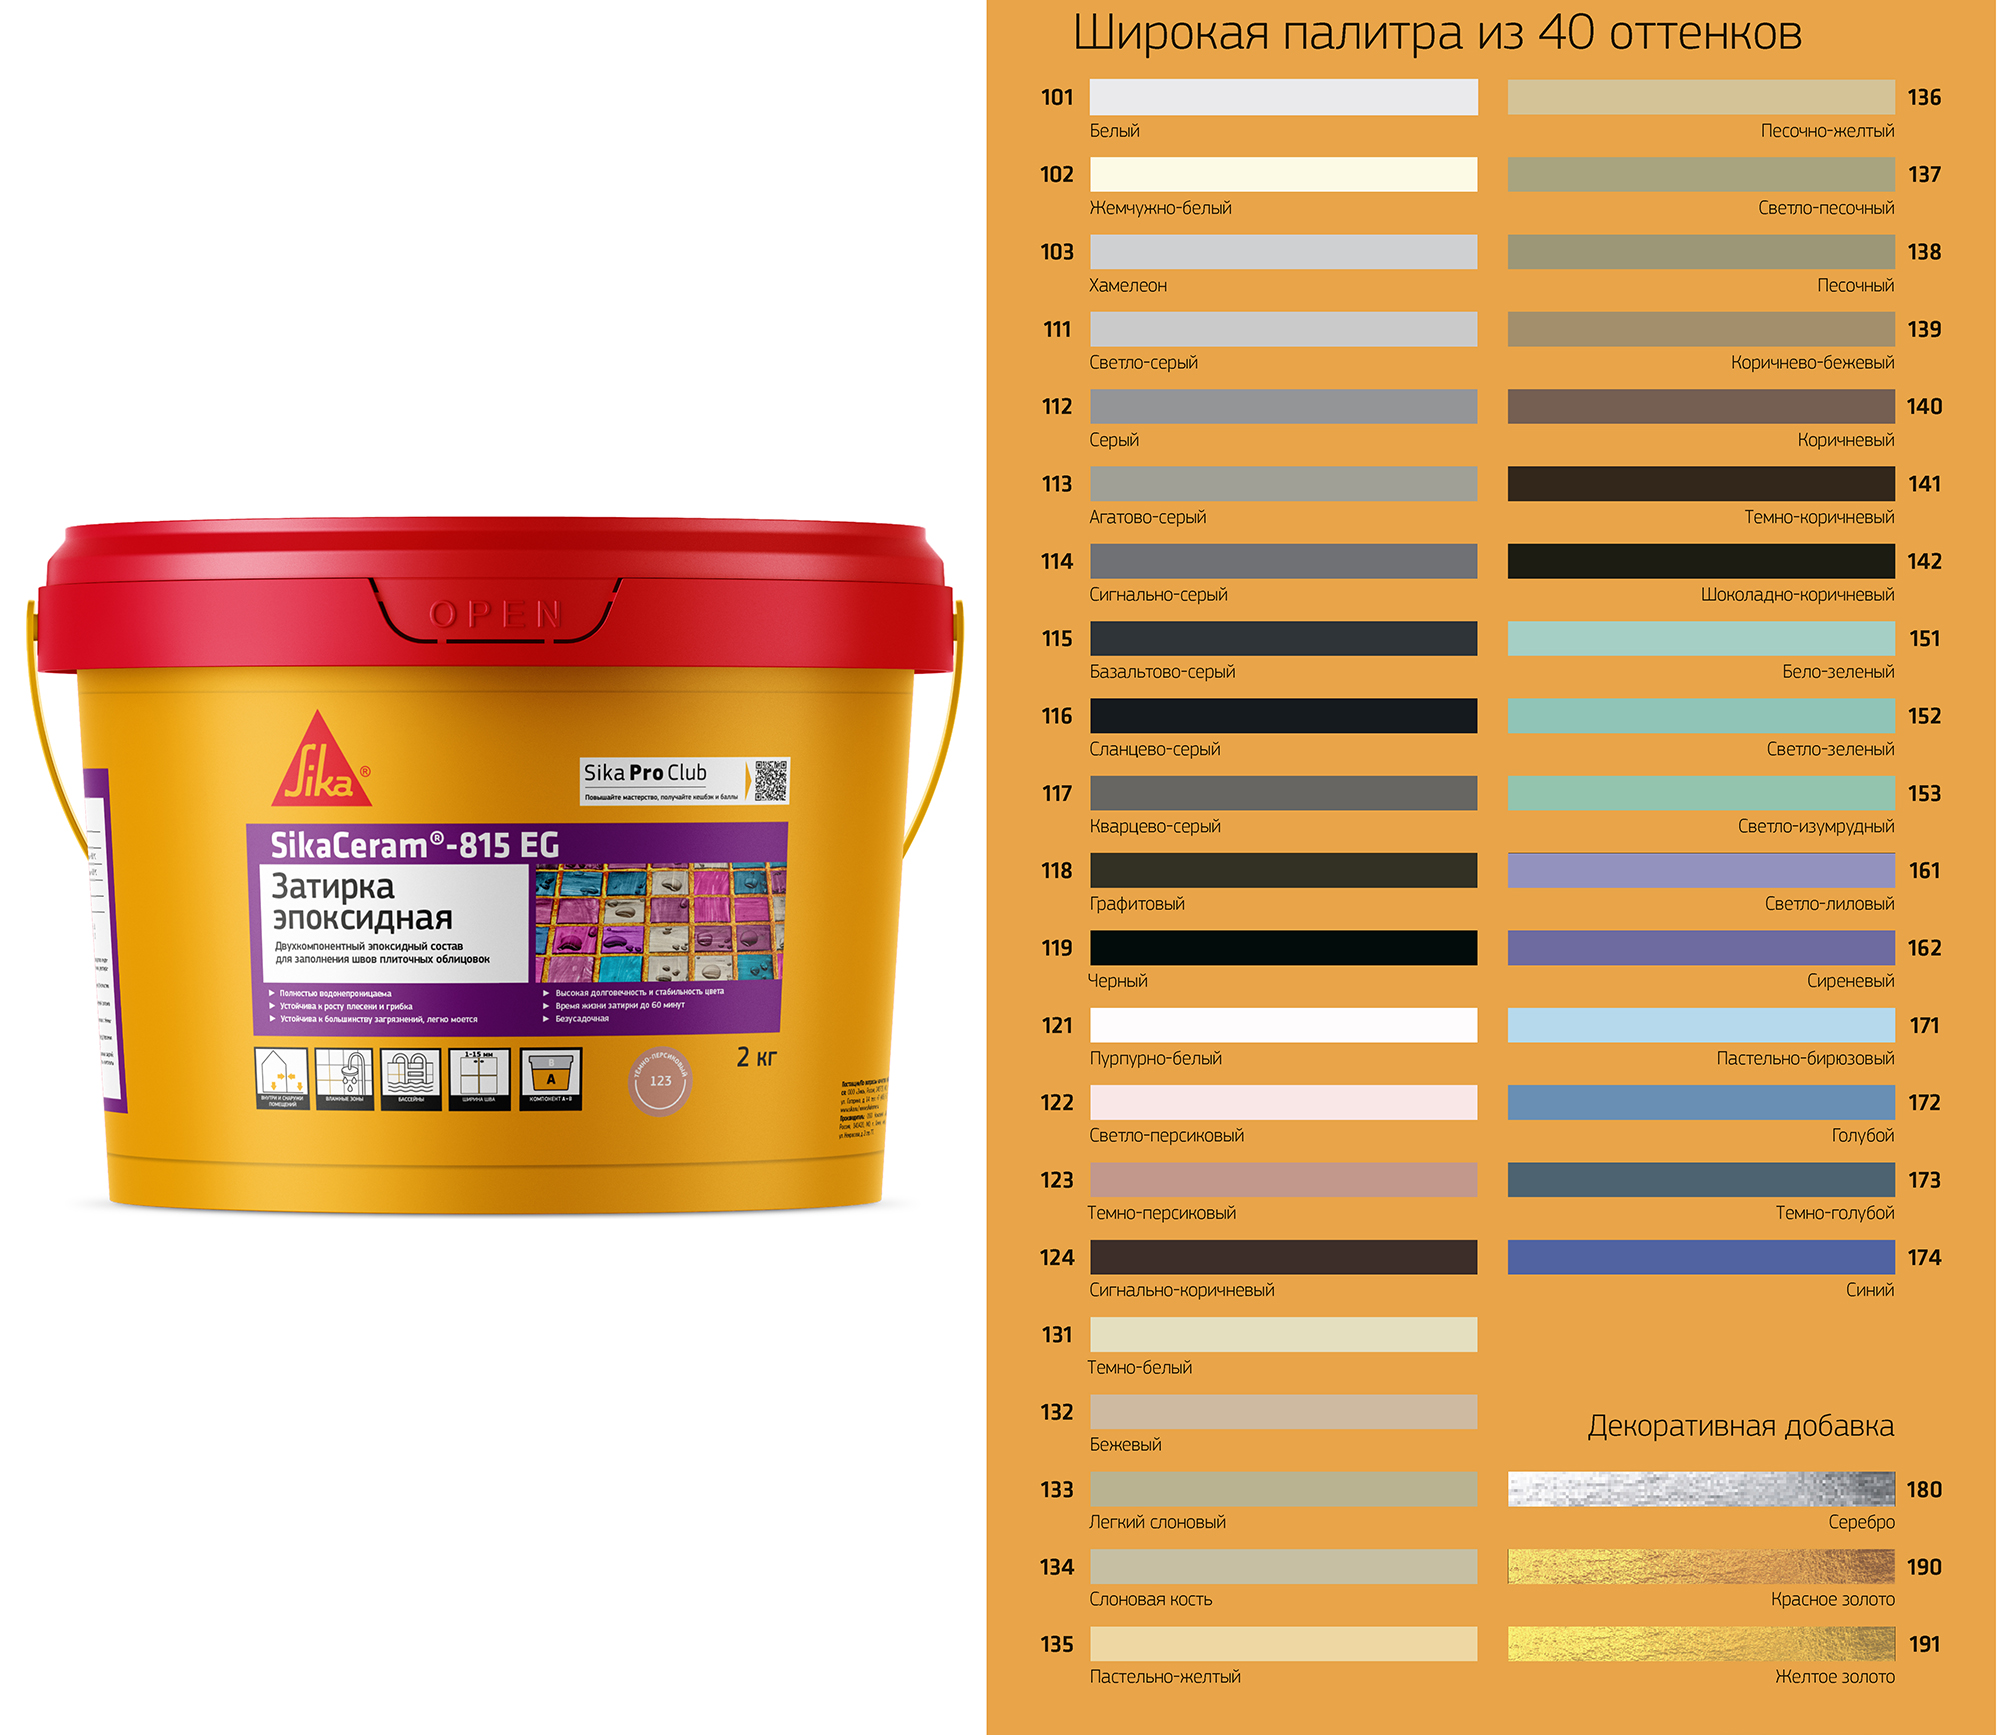 Затирка для плитки SikaCeram - 815 EG двухкомпонентная эпоксидная, цвет сланцево-сер (116)